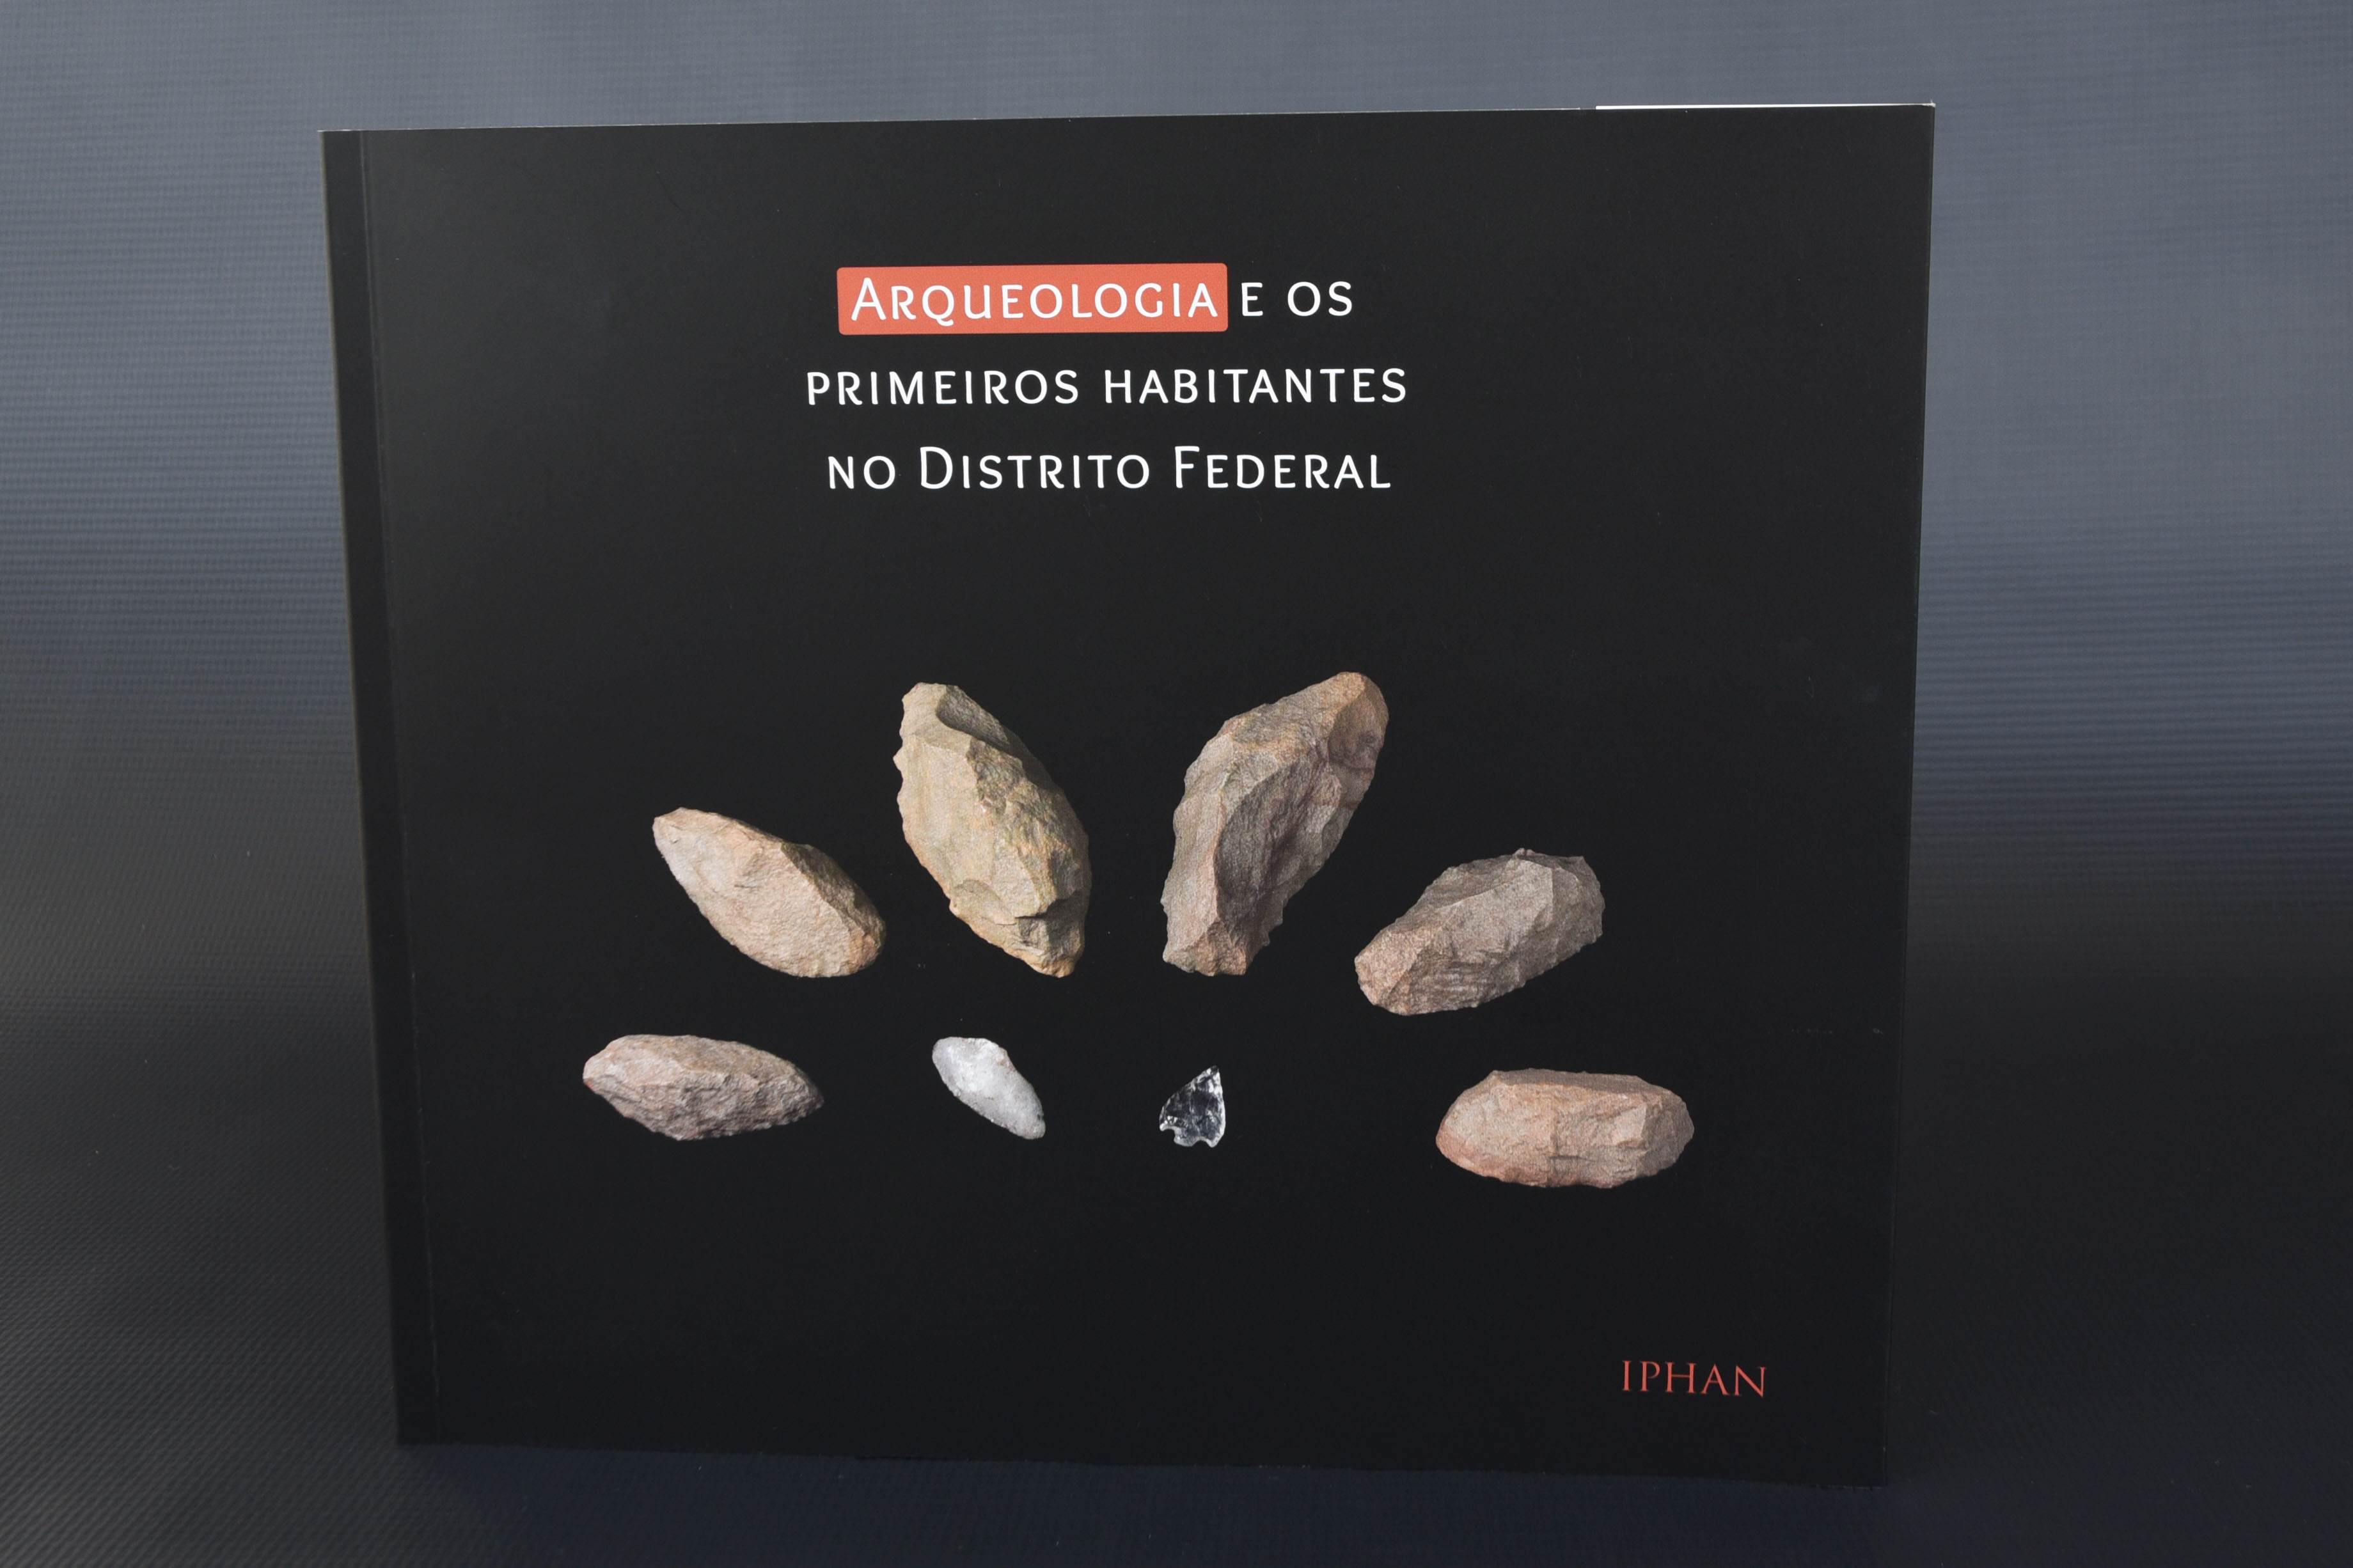 Iphan lança livro sobre arqueologia e os primeiros habitantes do Distrito Federal (DF)